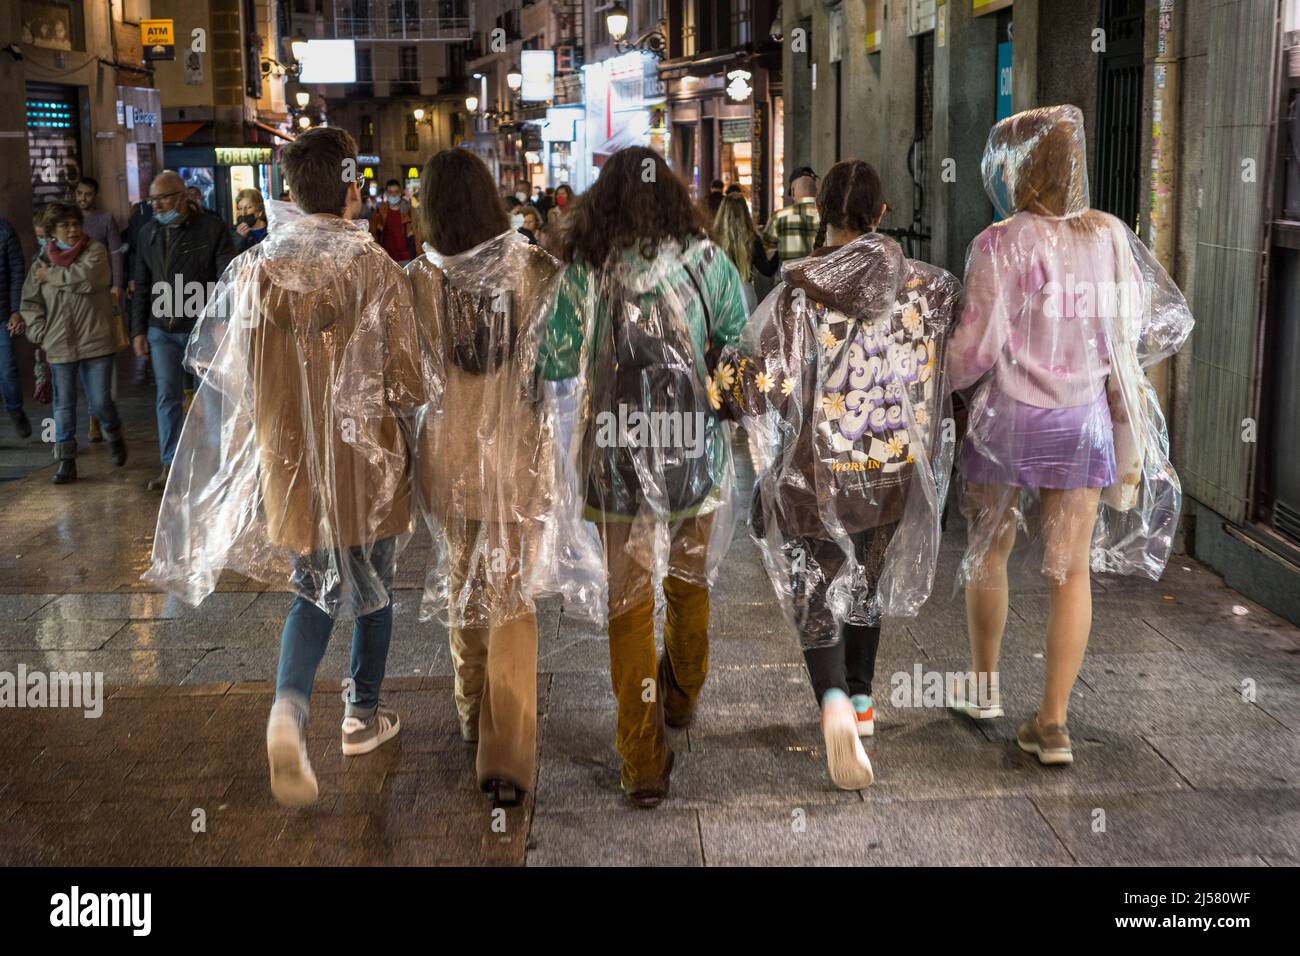 Un grupo de jóvenes que caminan bajo la lluvia con impermeables de plástico transparente, Madrid, España. Foto de stock